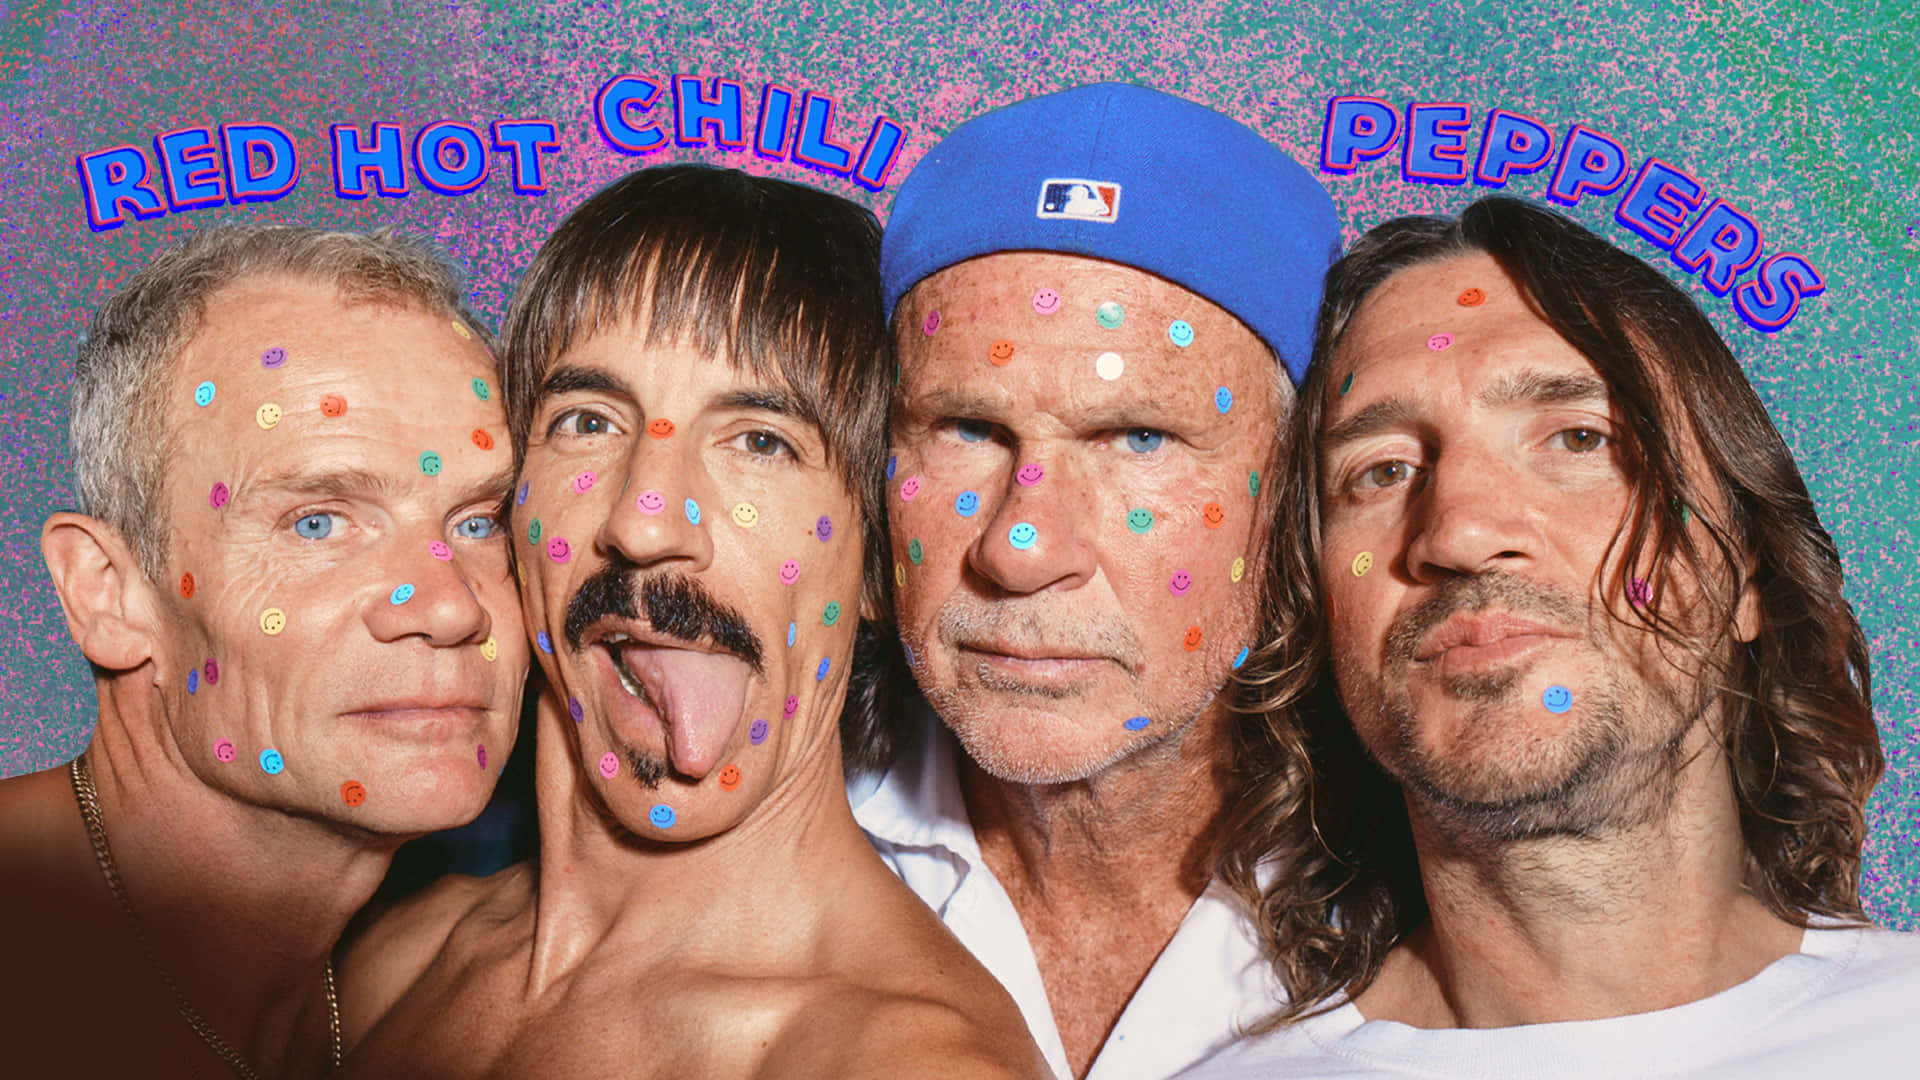 Redhot Chili Peppers - Anúncio/propaganda De Fundo De Tela De Computador Ou Celular. Papel de Parede